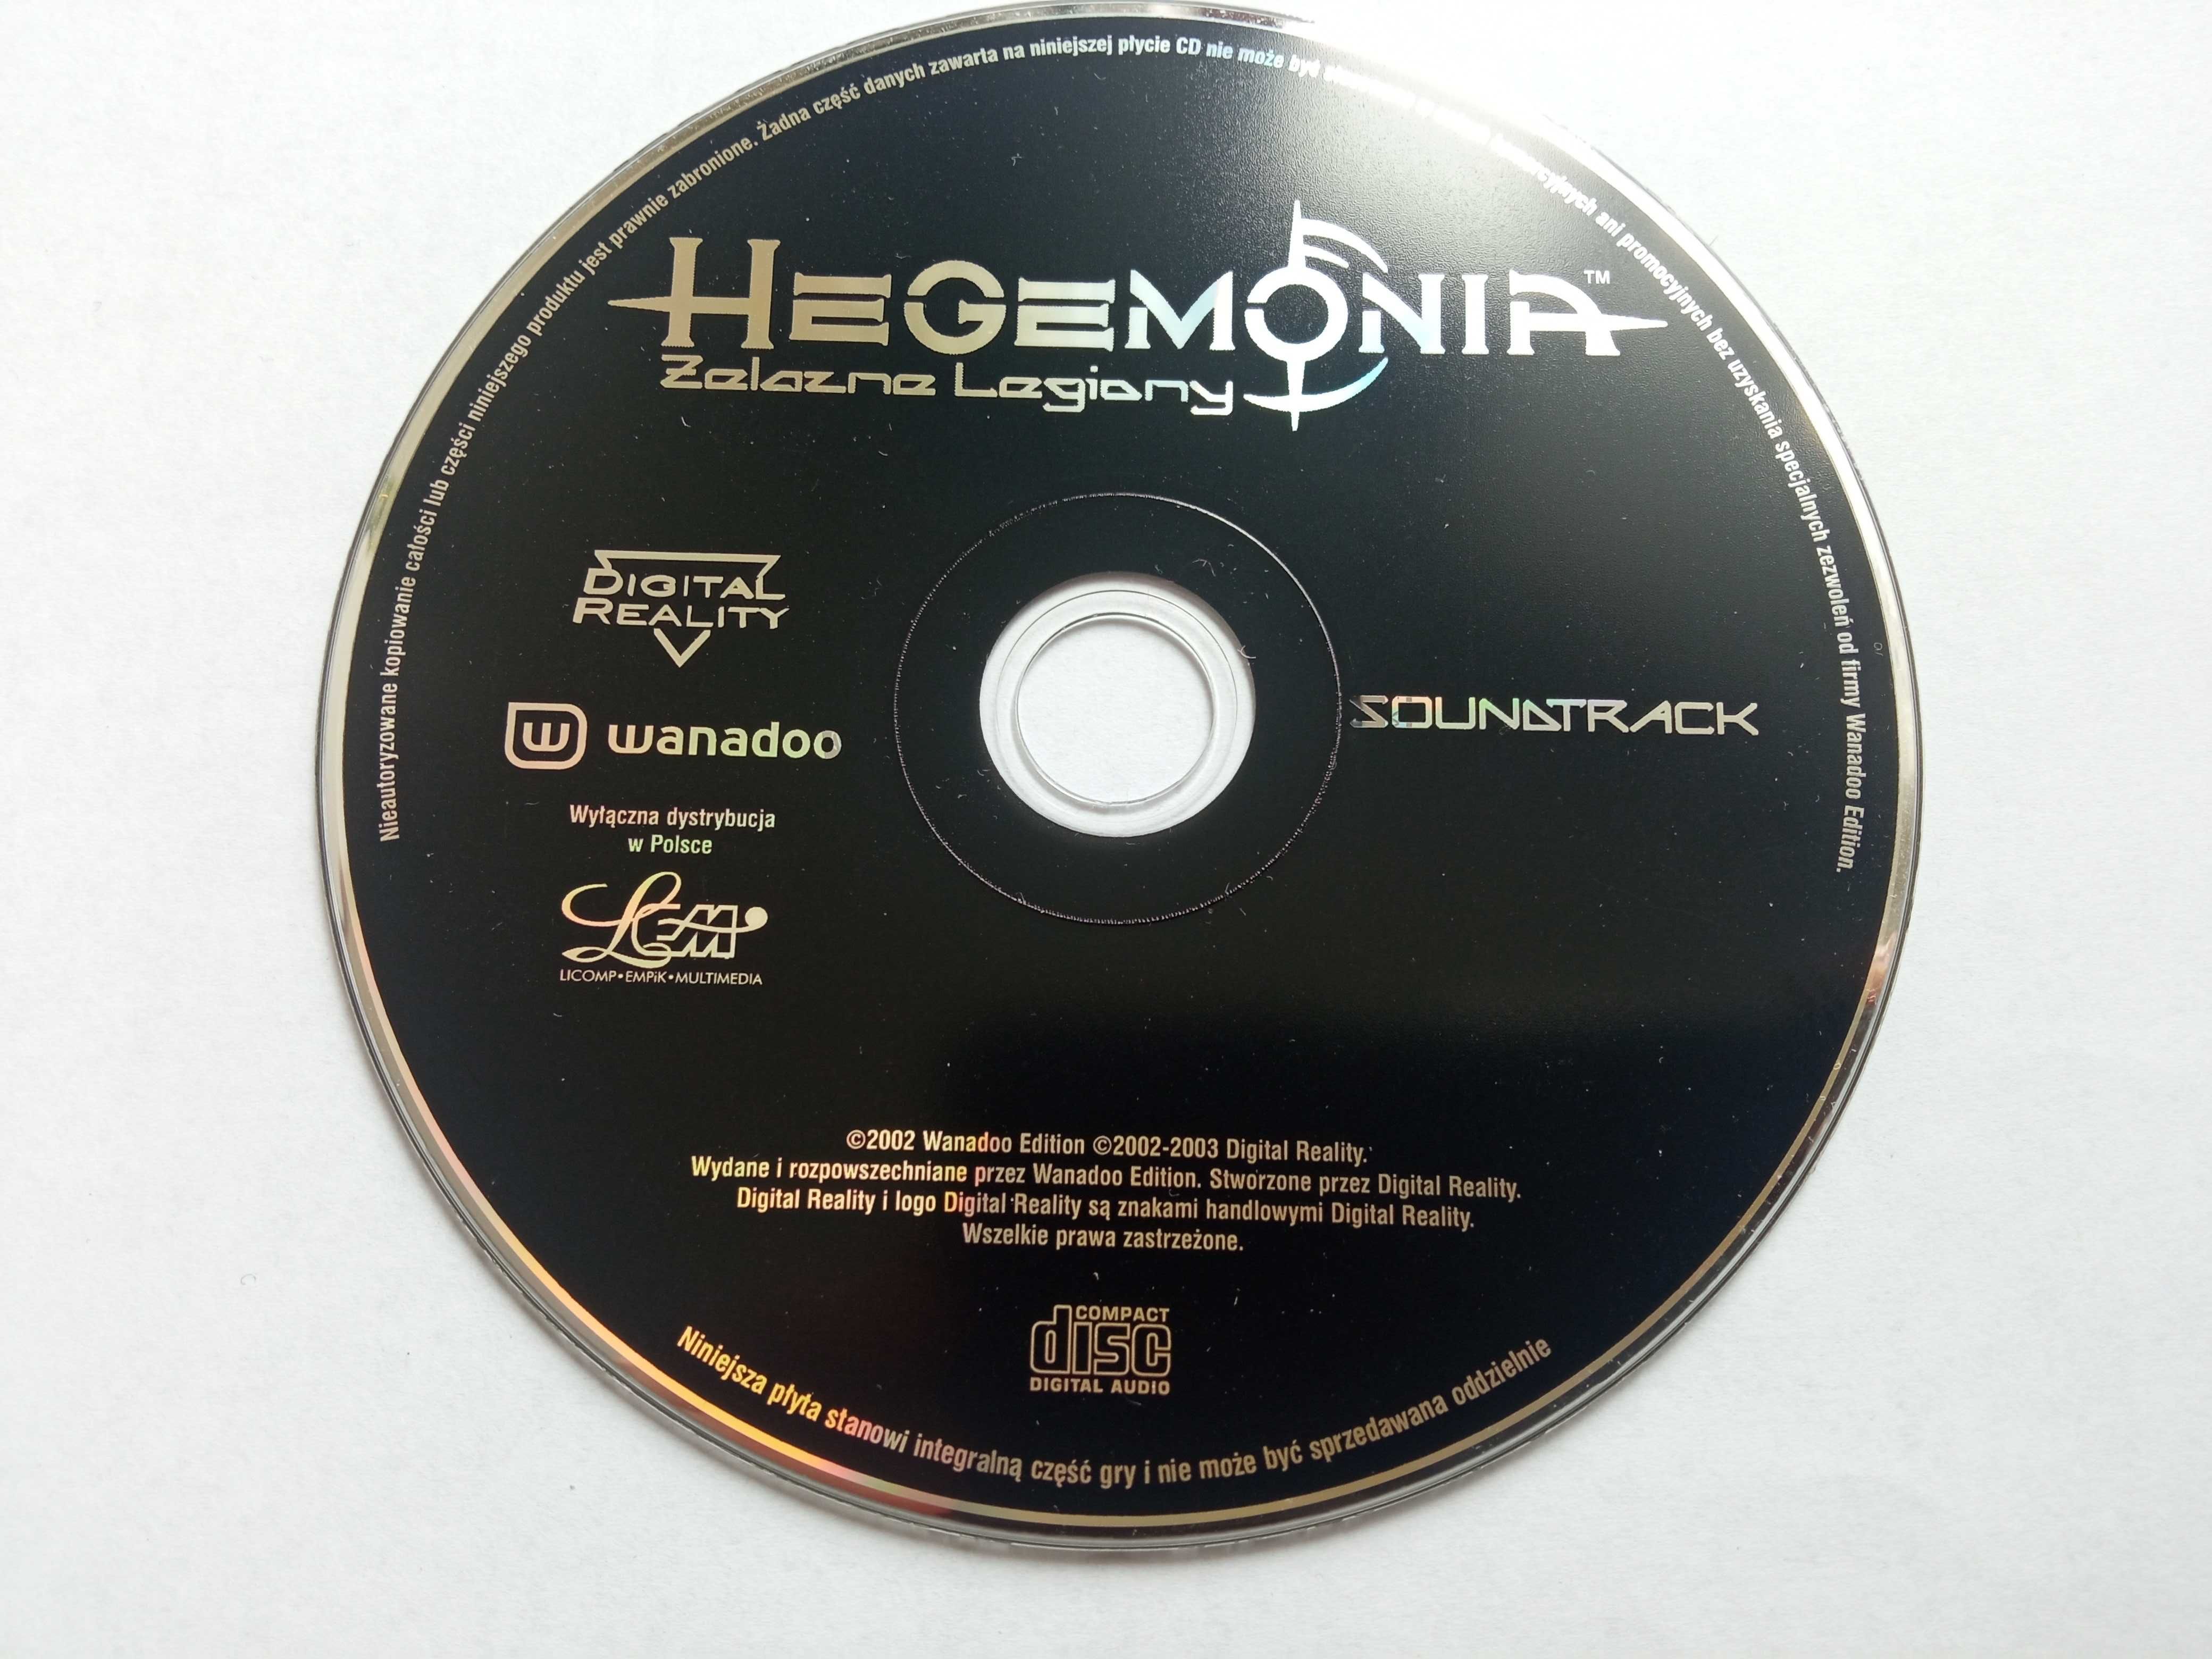 Hegemonia Żelazne Golemy Soundtrack Płyta CD z muzyką